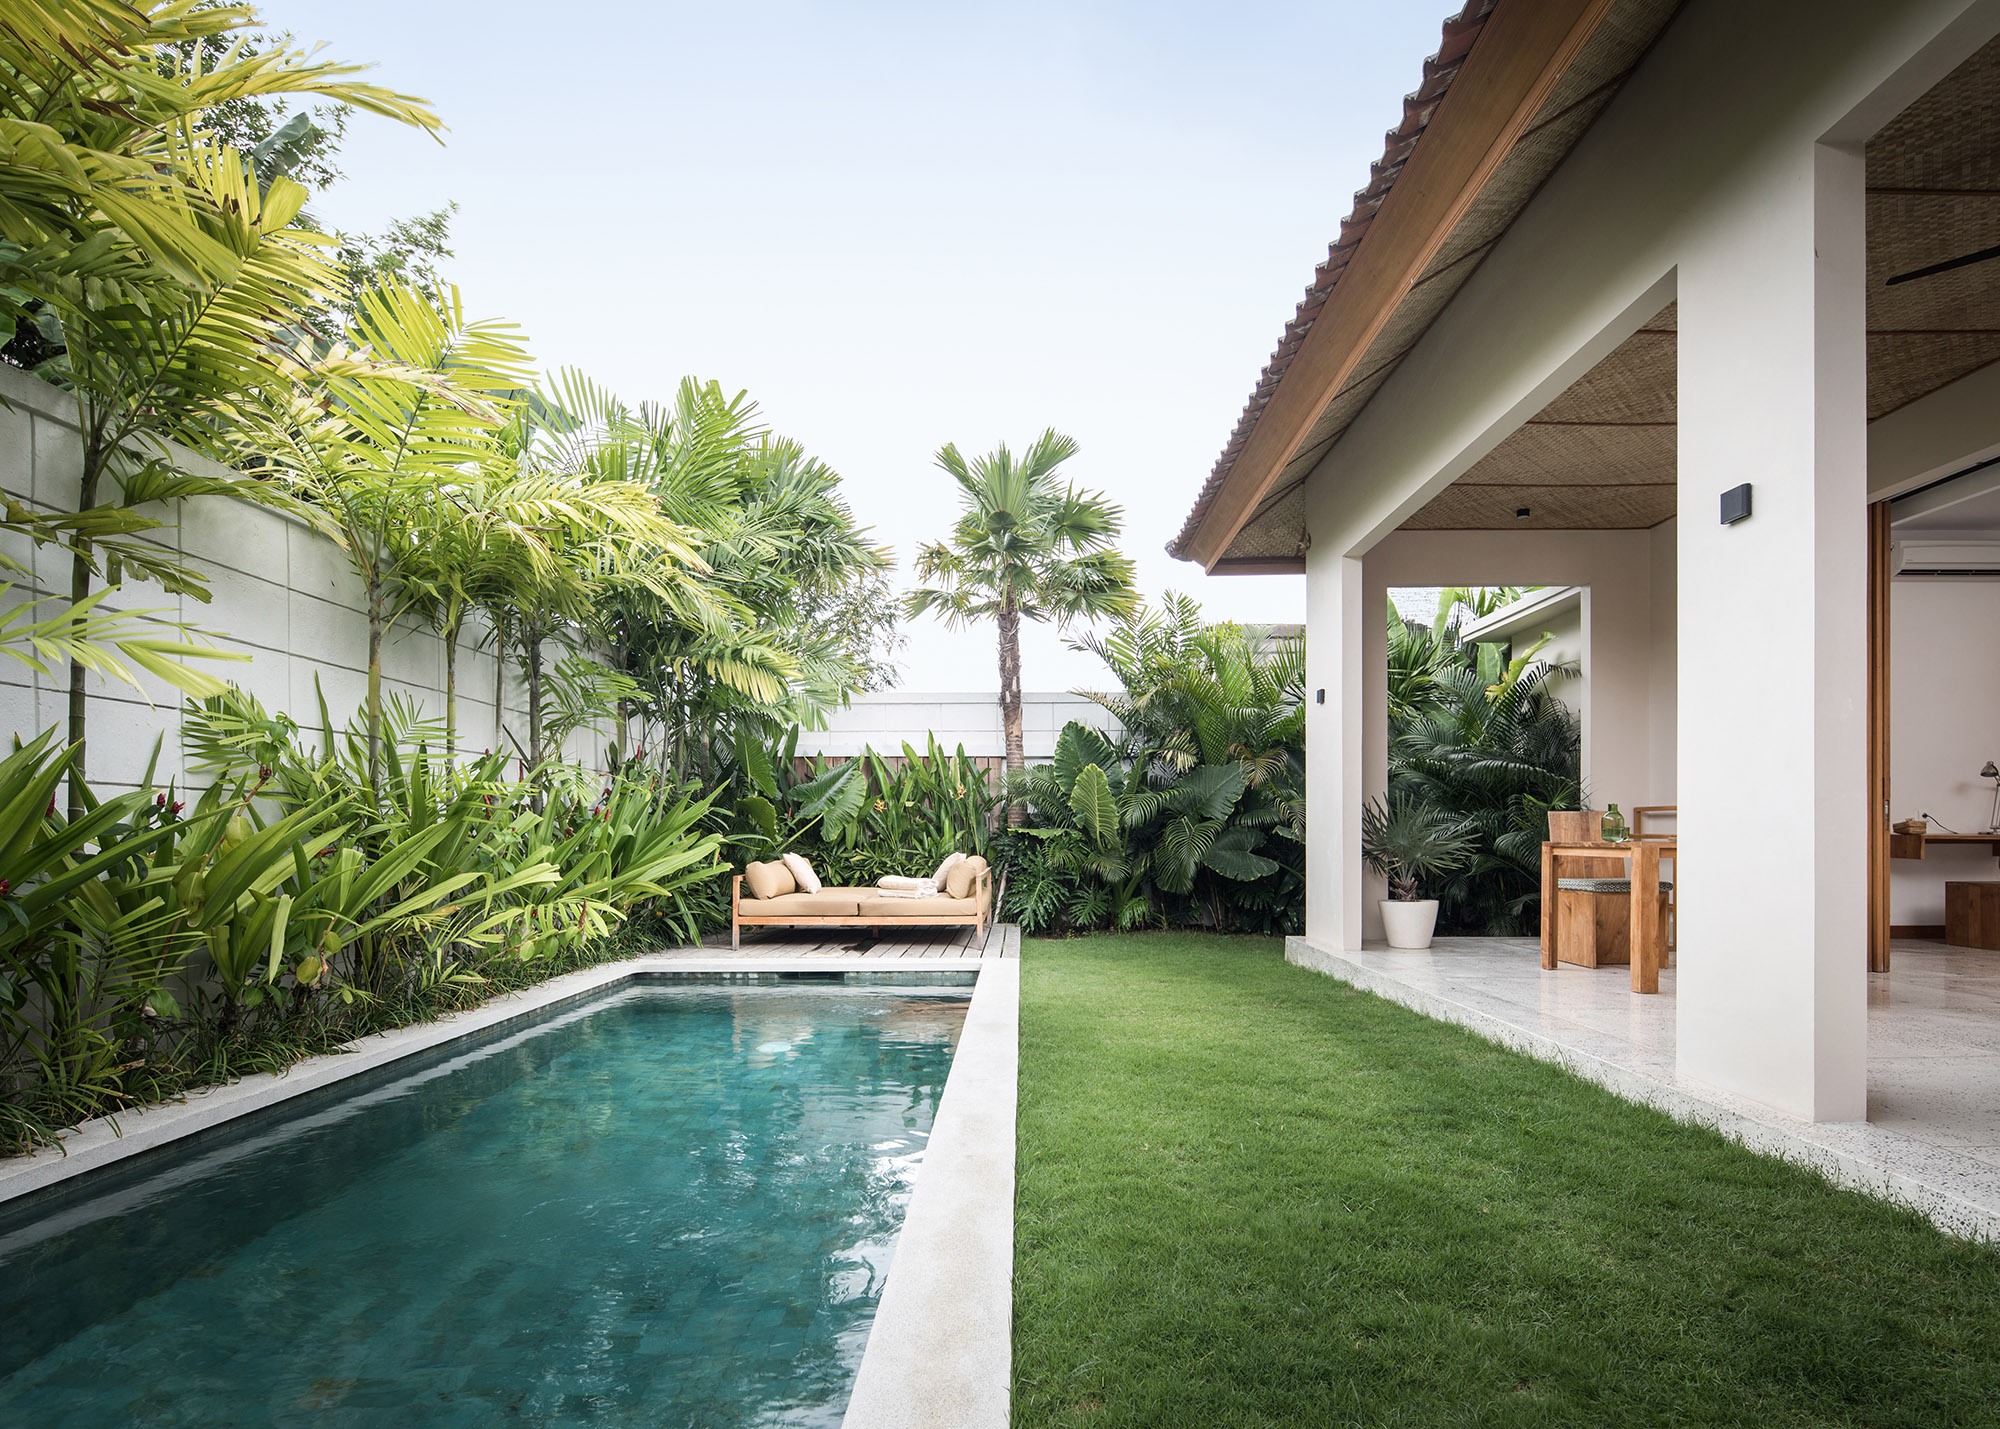 Design Assembly - Two Palms Studio - Bali Architect - Interior Design - Bali Villa - Pool Area